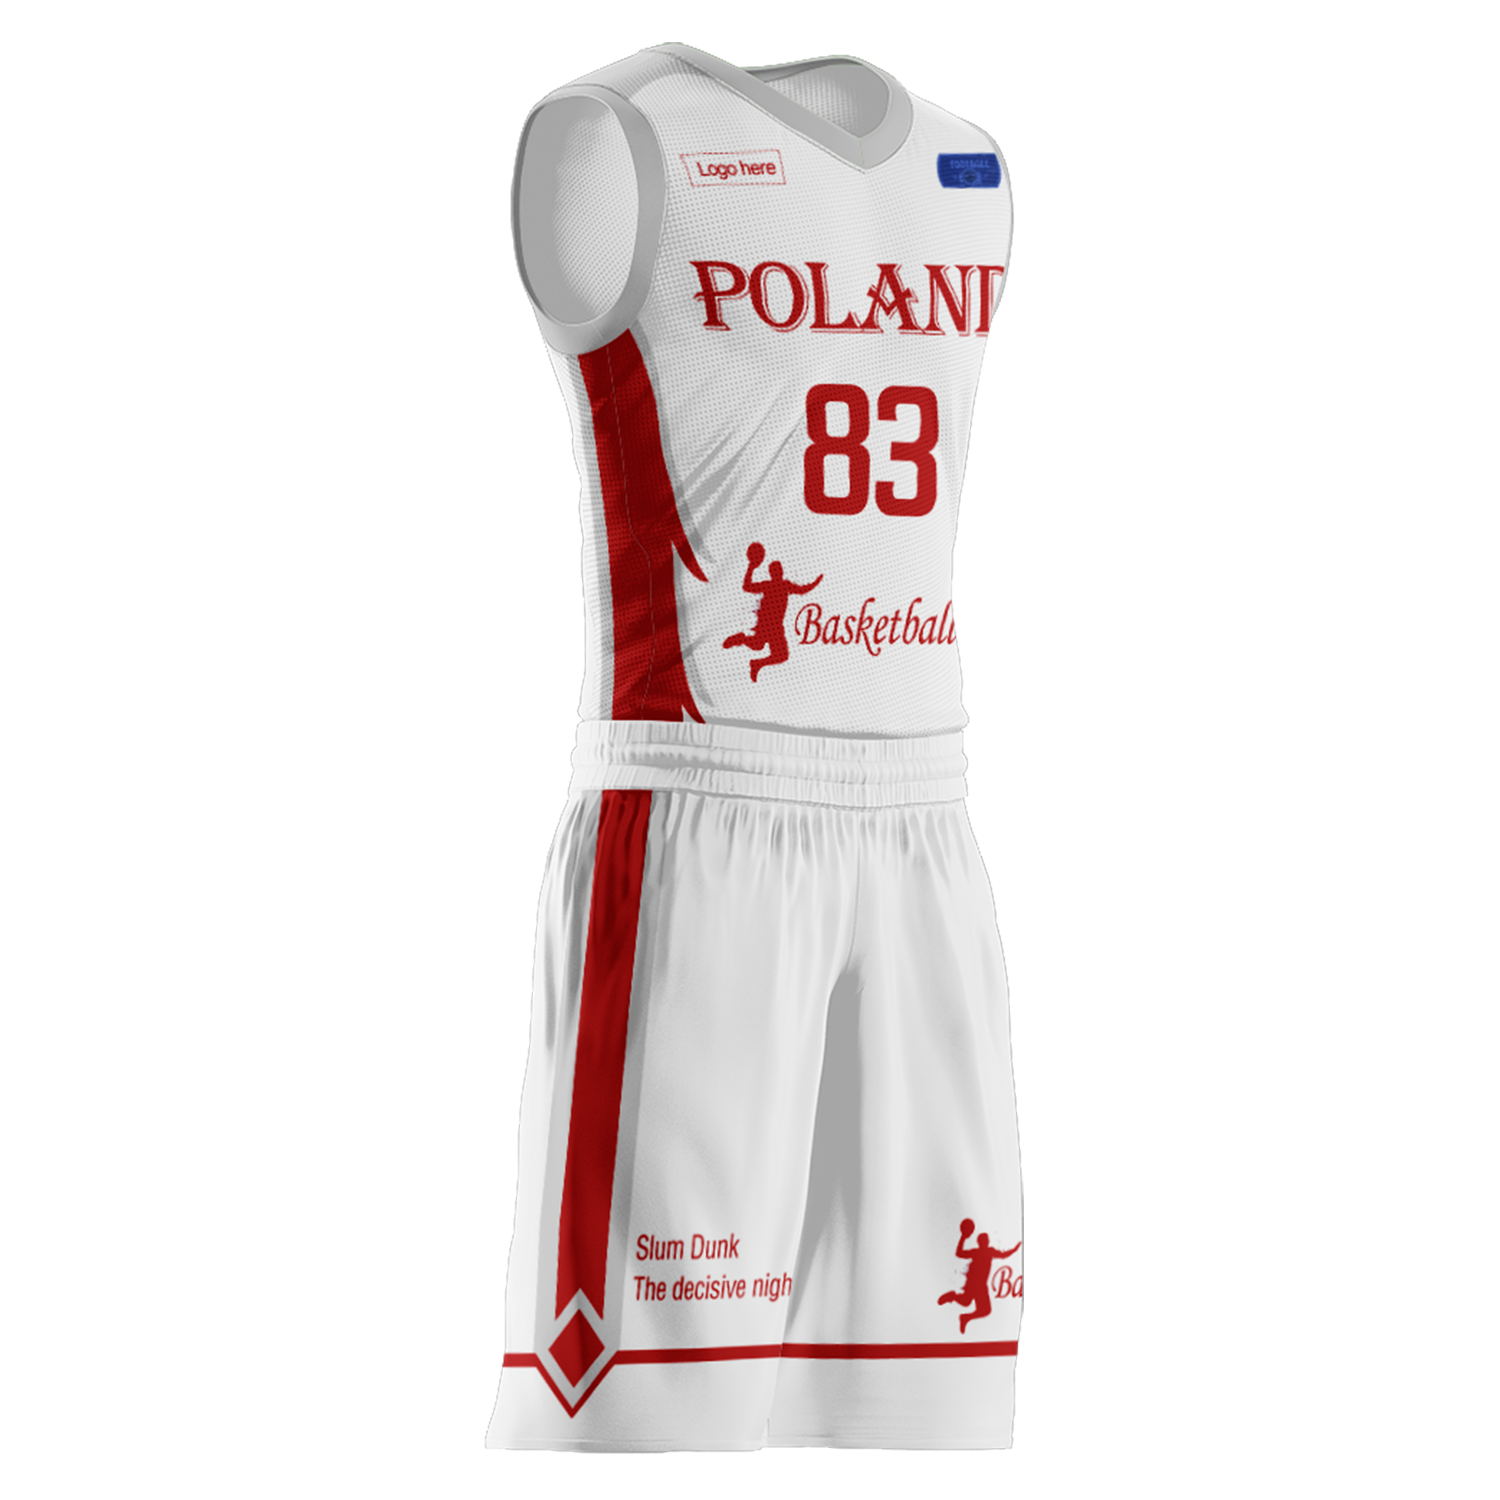 Trajes de baloncesto del equipo de Polonia personalizados